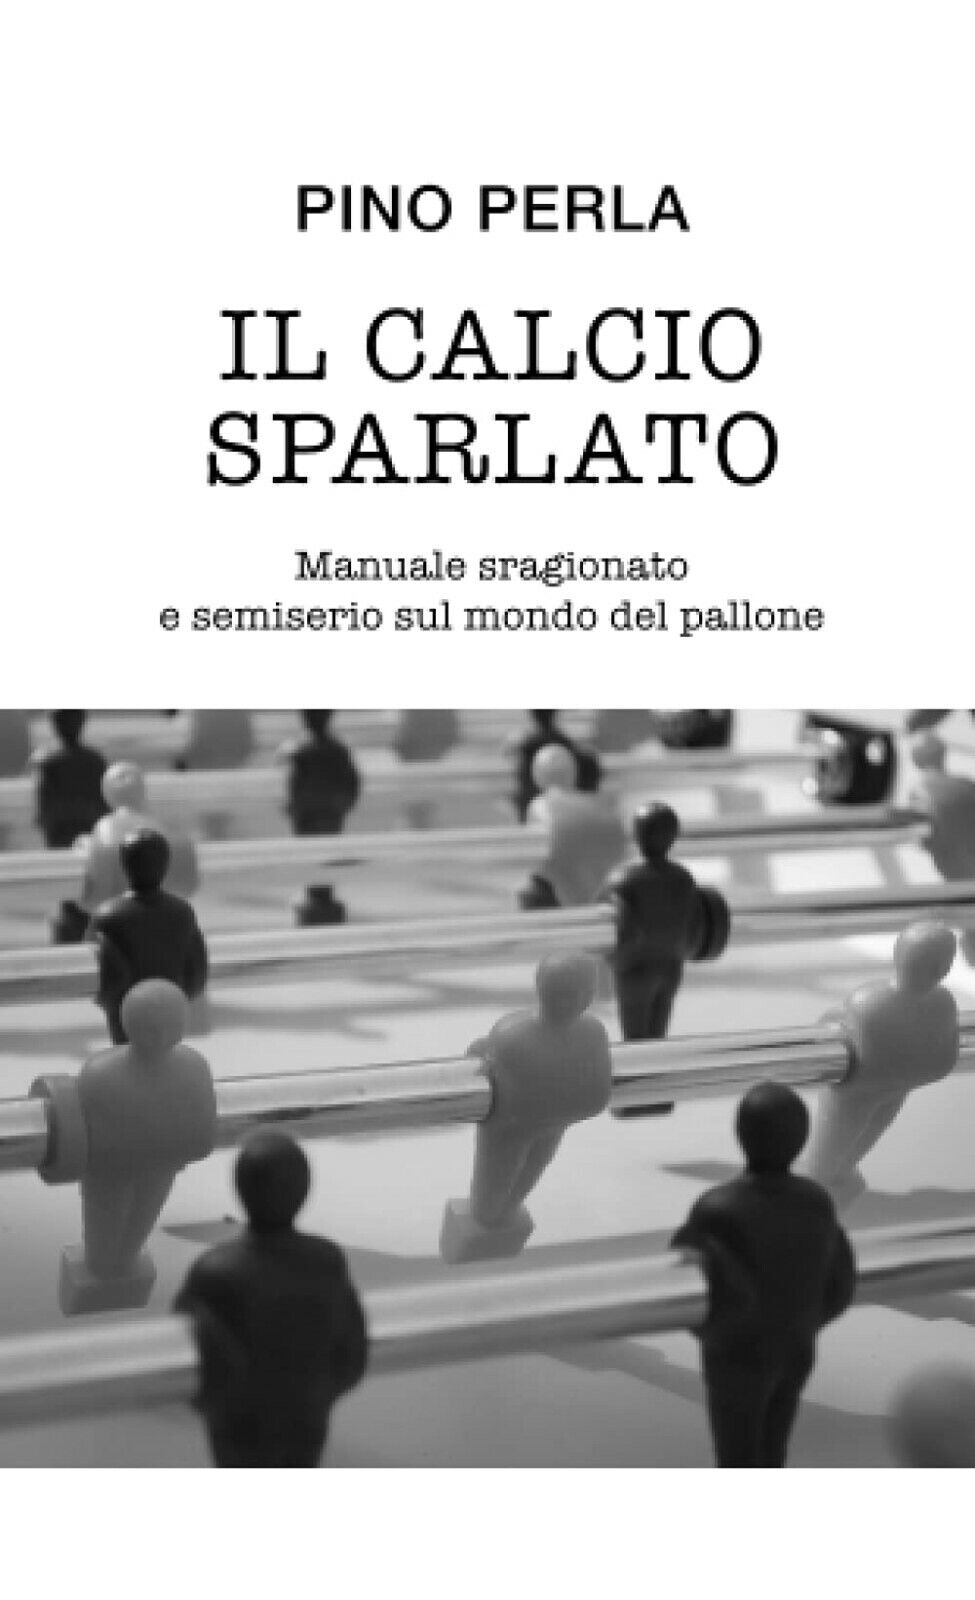 Il calcio sparlato - Pino Perla - Independently published, 2021